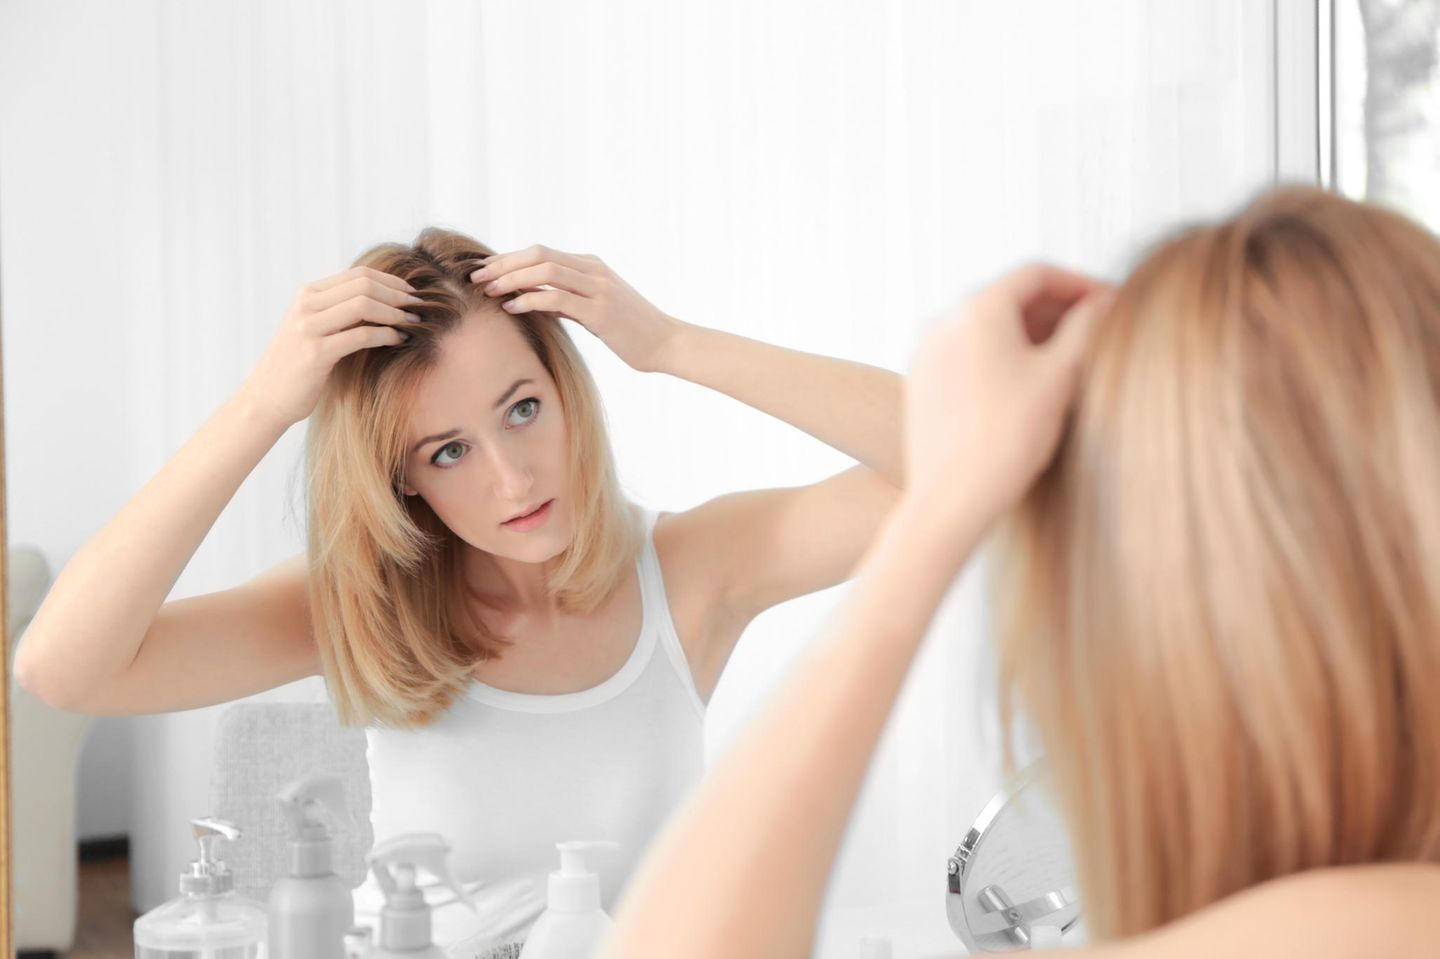 Koffein Shampoo Hilft Es Gegen Haarausfall Brigitte De